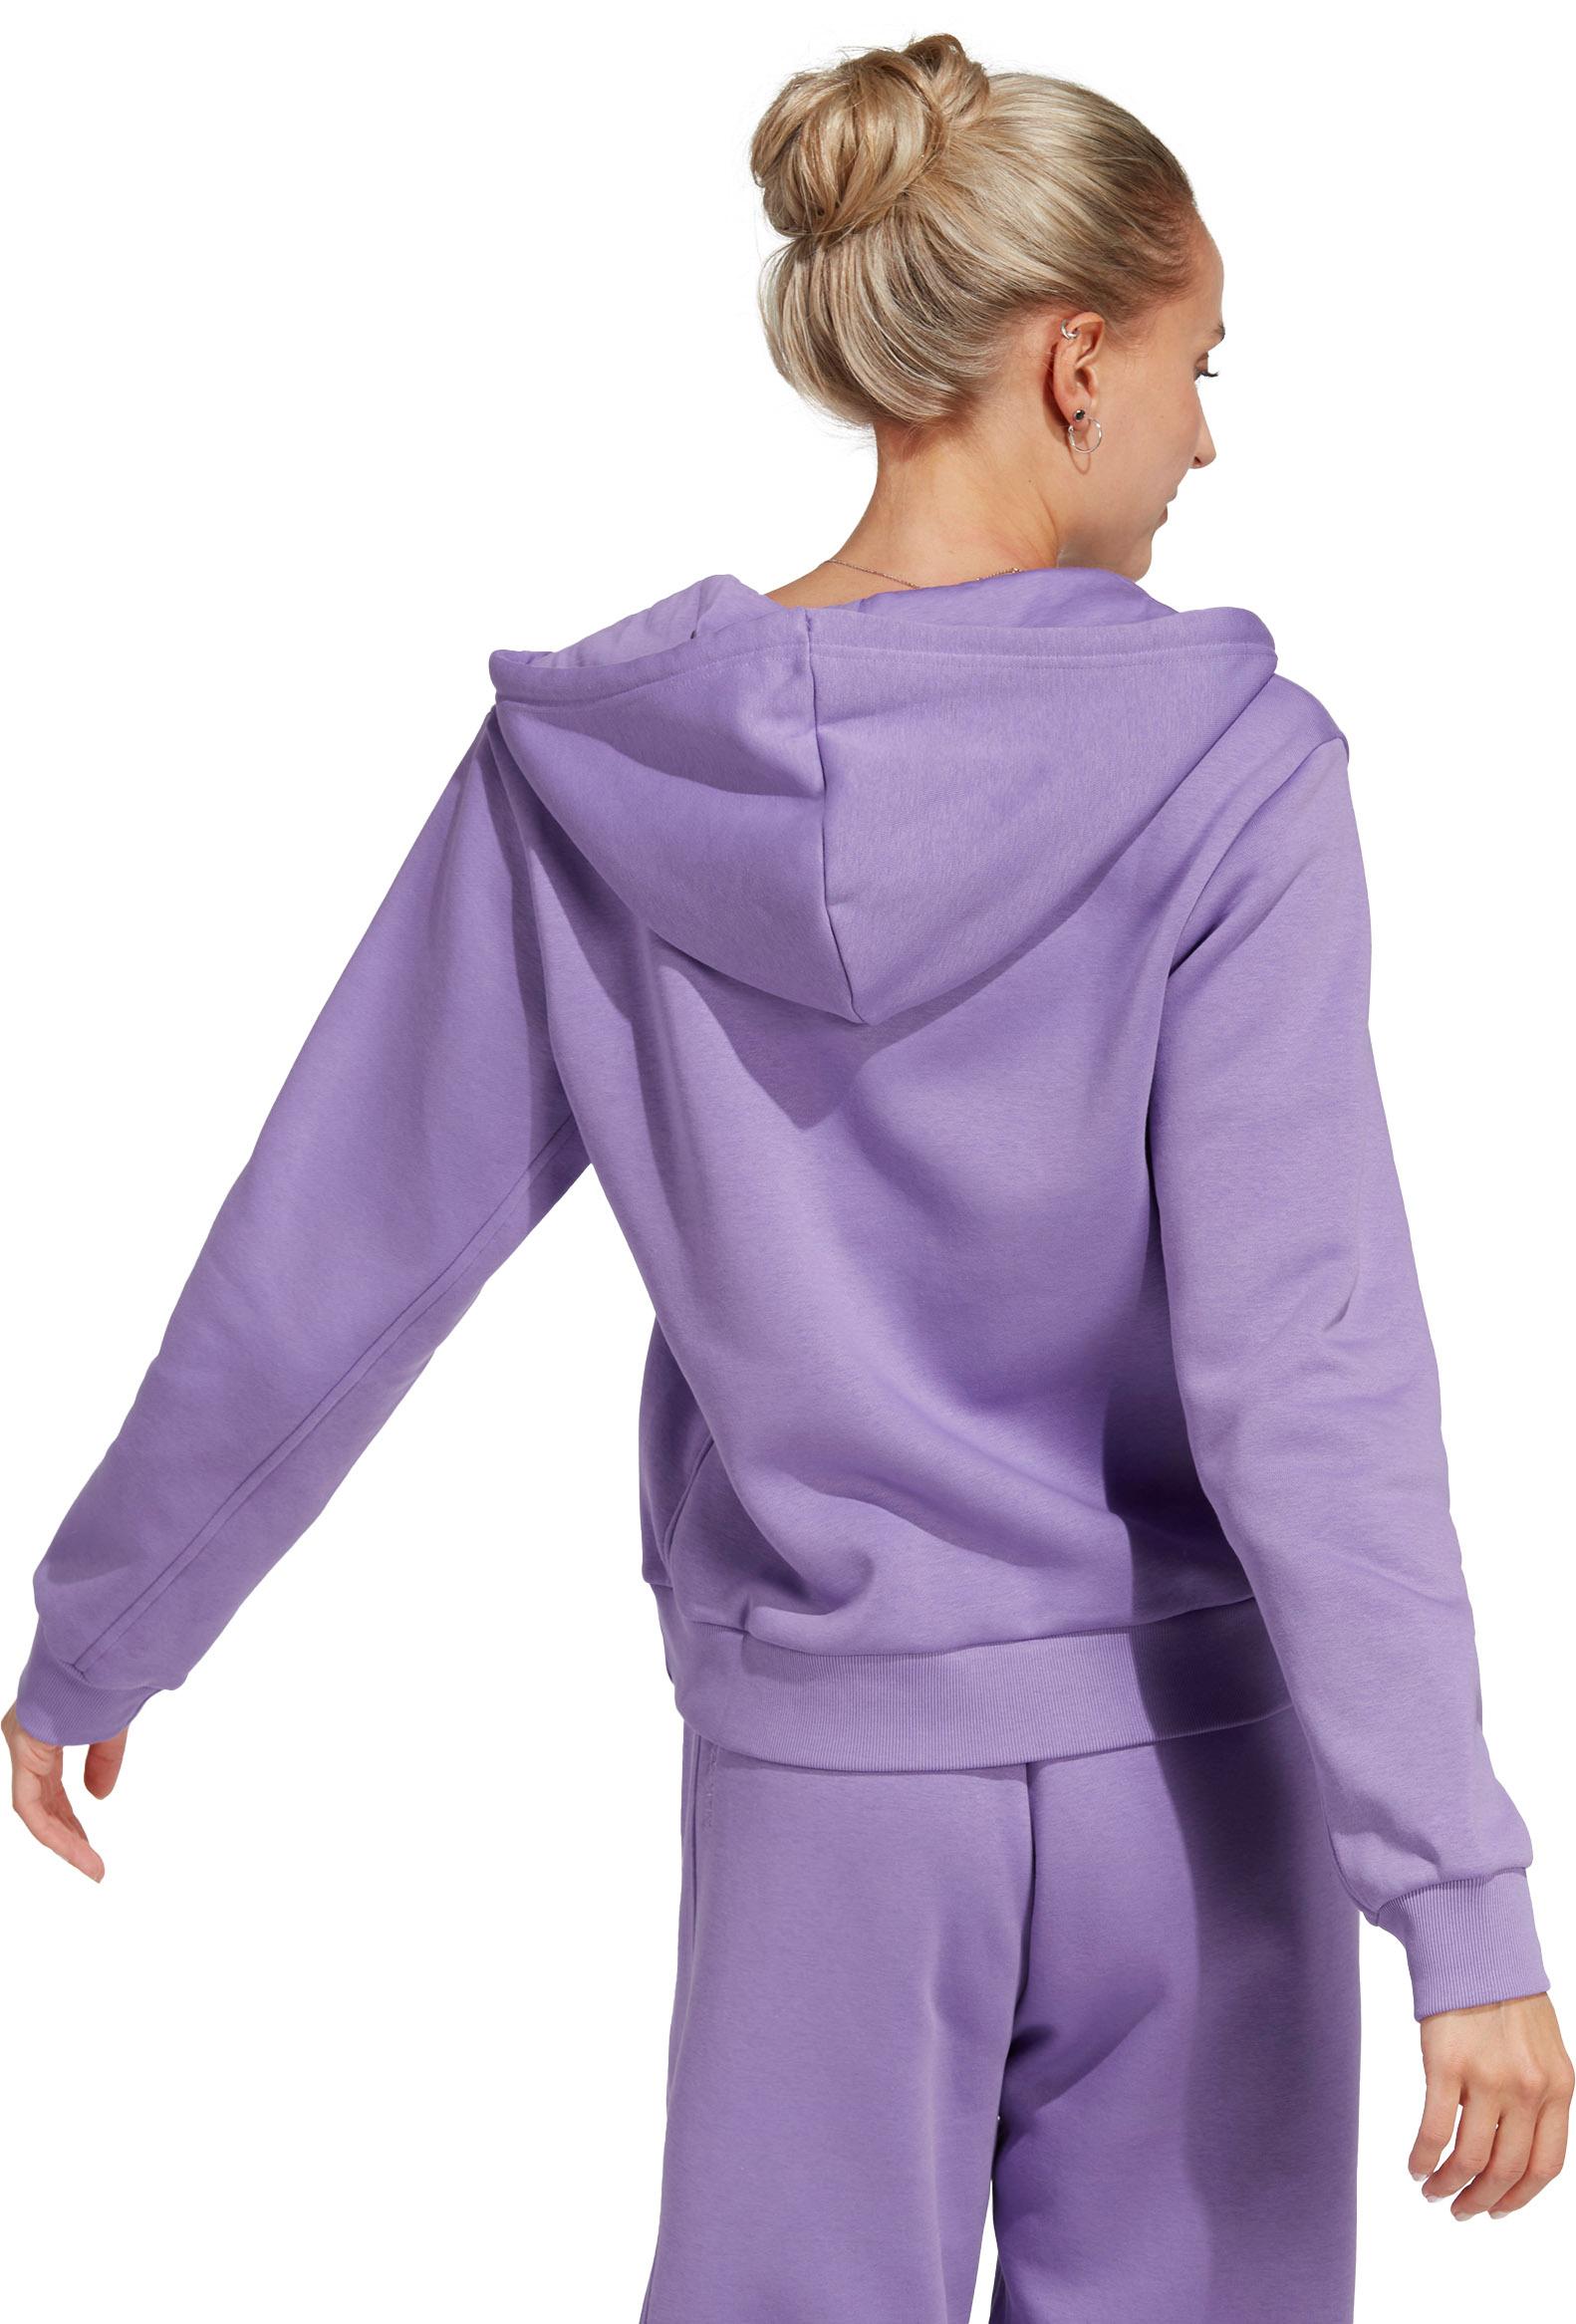 Shop Online All kaufen SportScheck von Damen Sweatjacke violet fusion Szn im Adidas